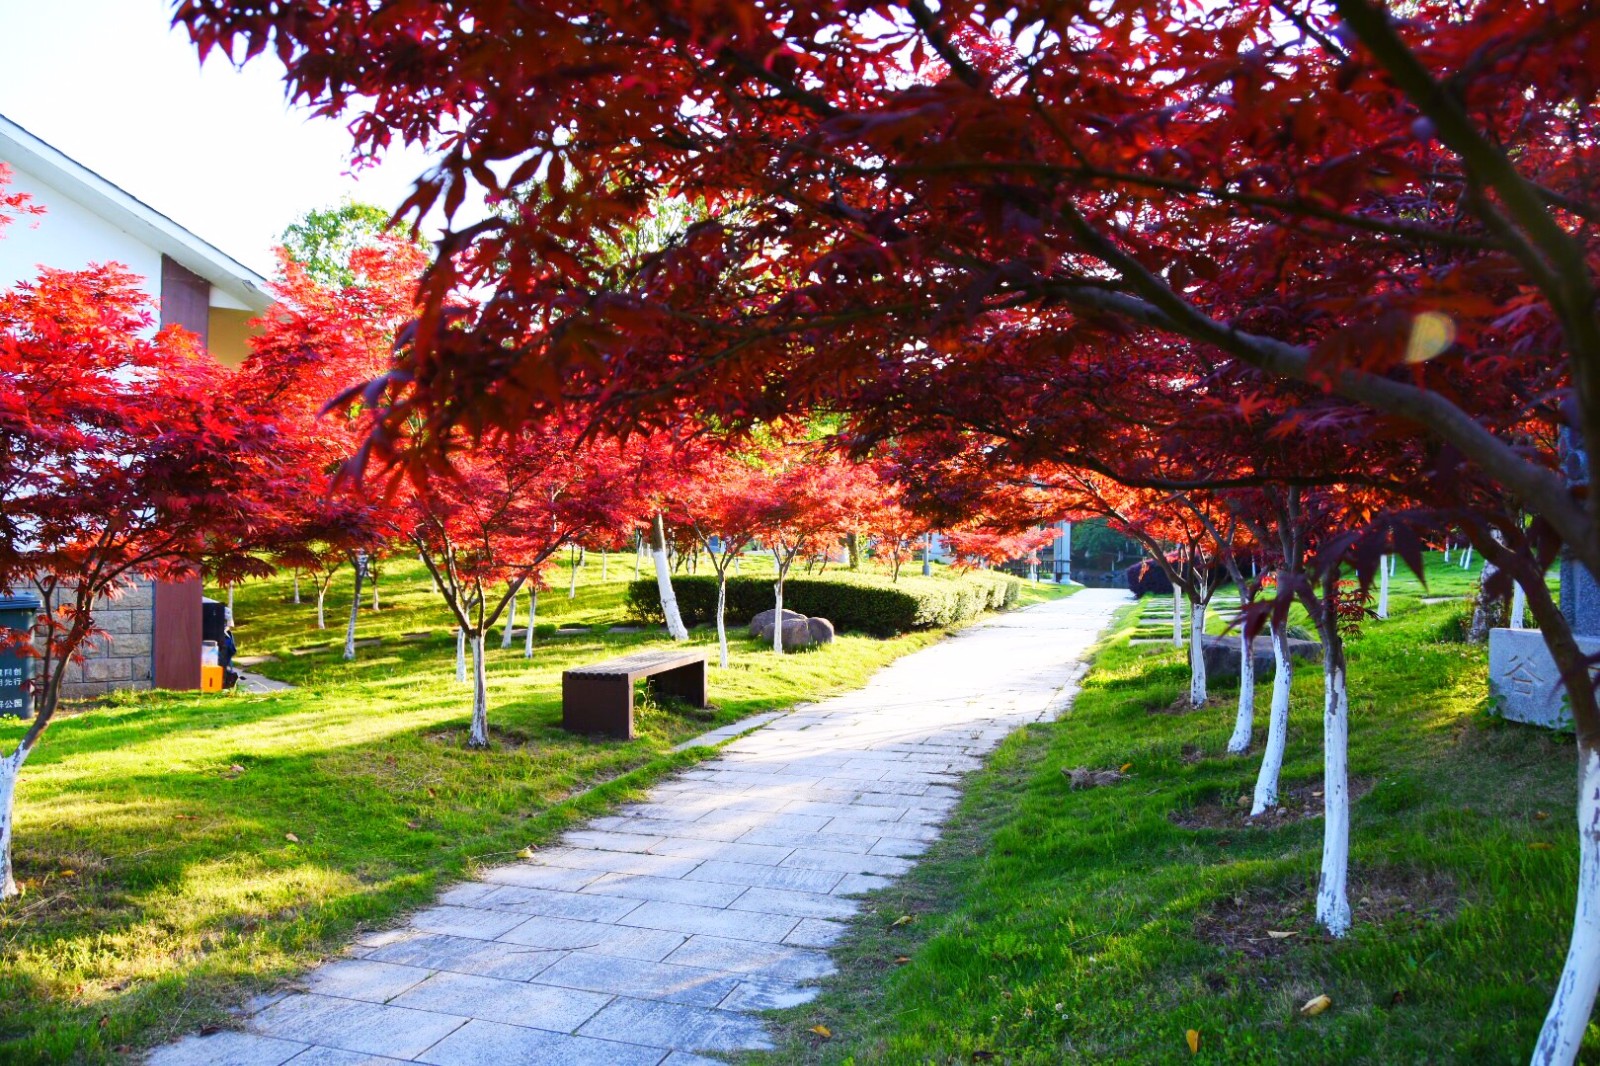 【立夏】火红的枫树从春天走来,带着满满的热情拥抱夏天/22图